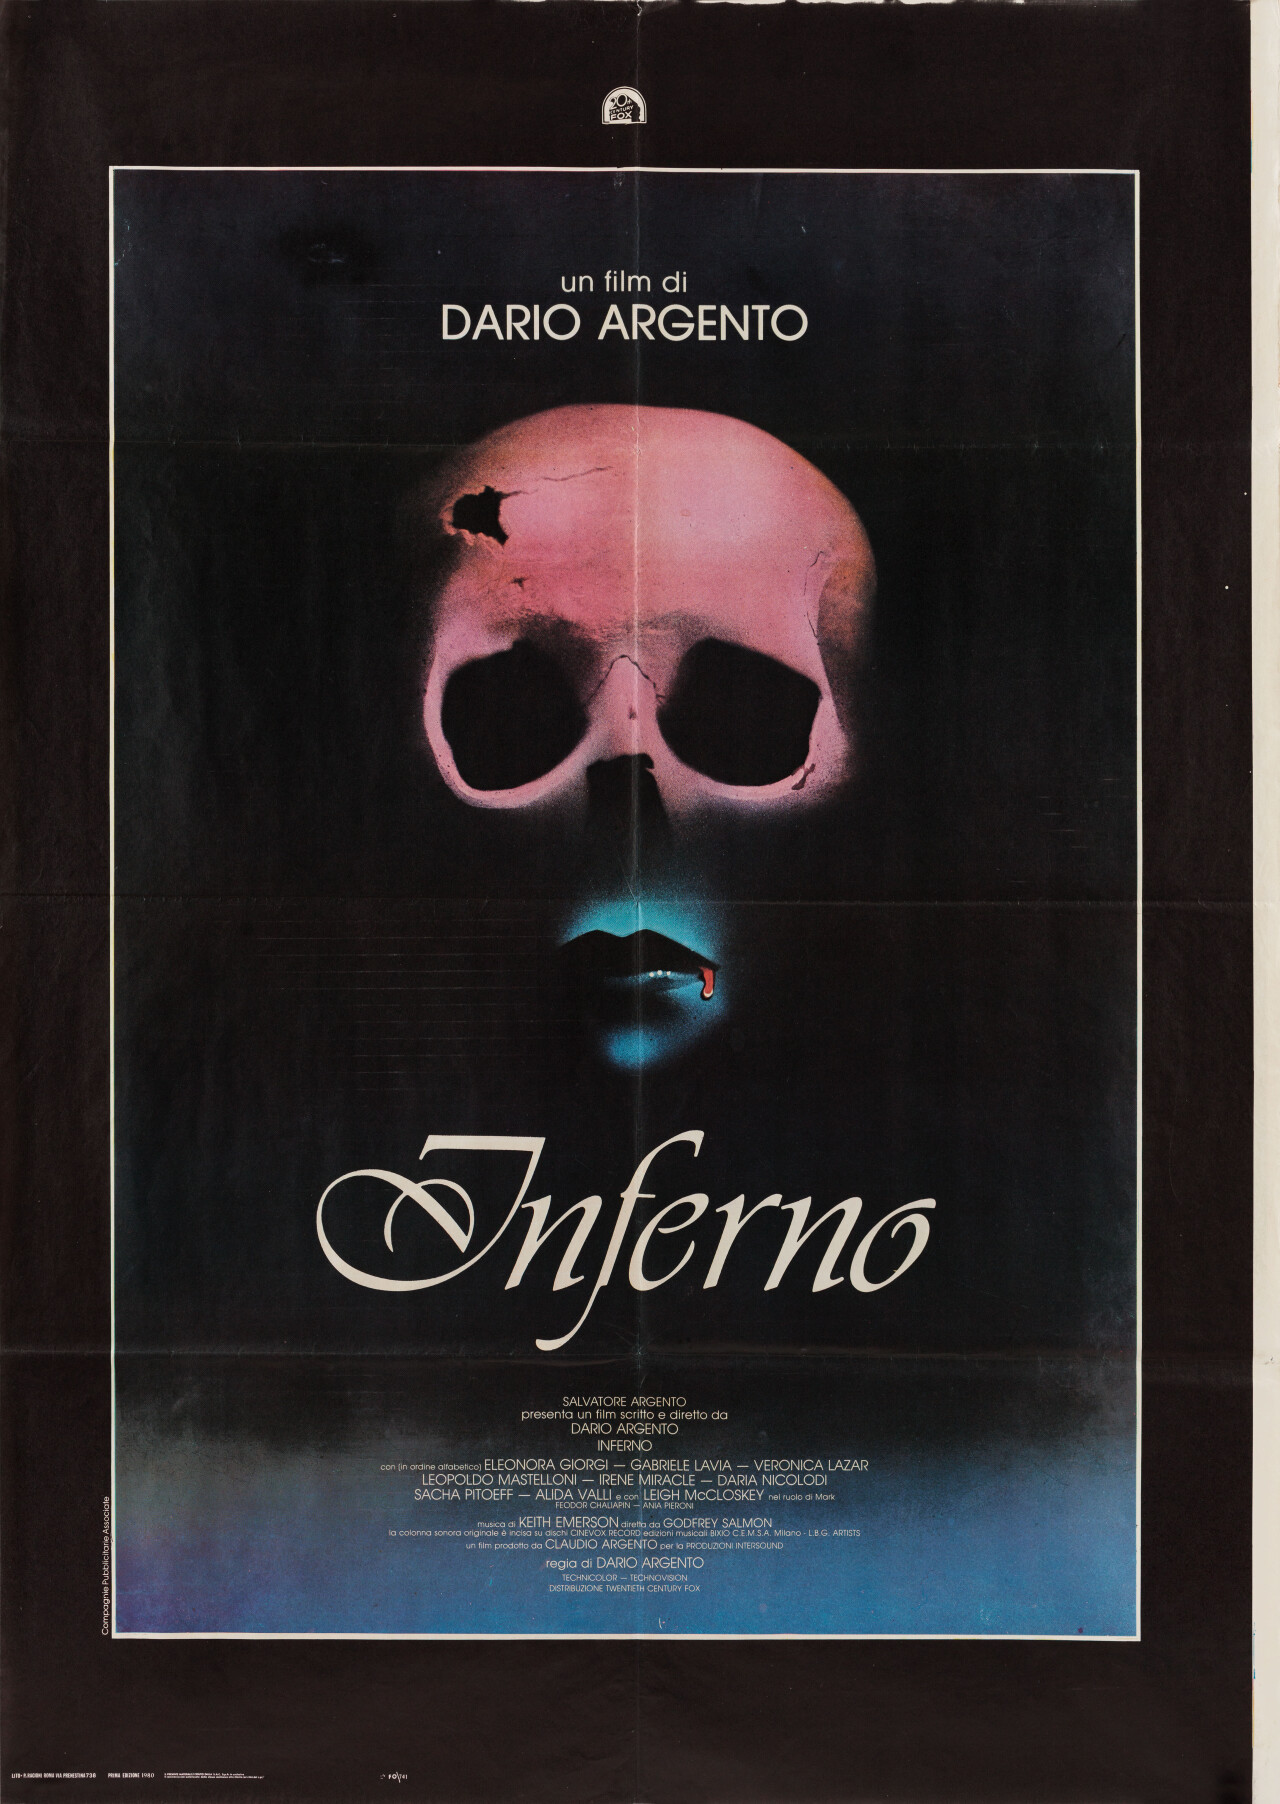 Инферно (Inferno, 1980), режиссёр Дарио Ардженто, итальянский постер к фильму (ужасы, 1980)